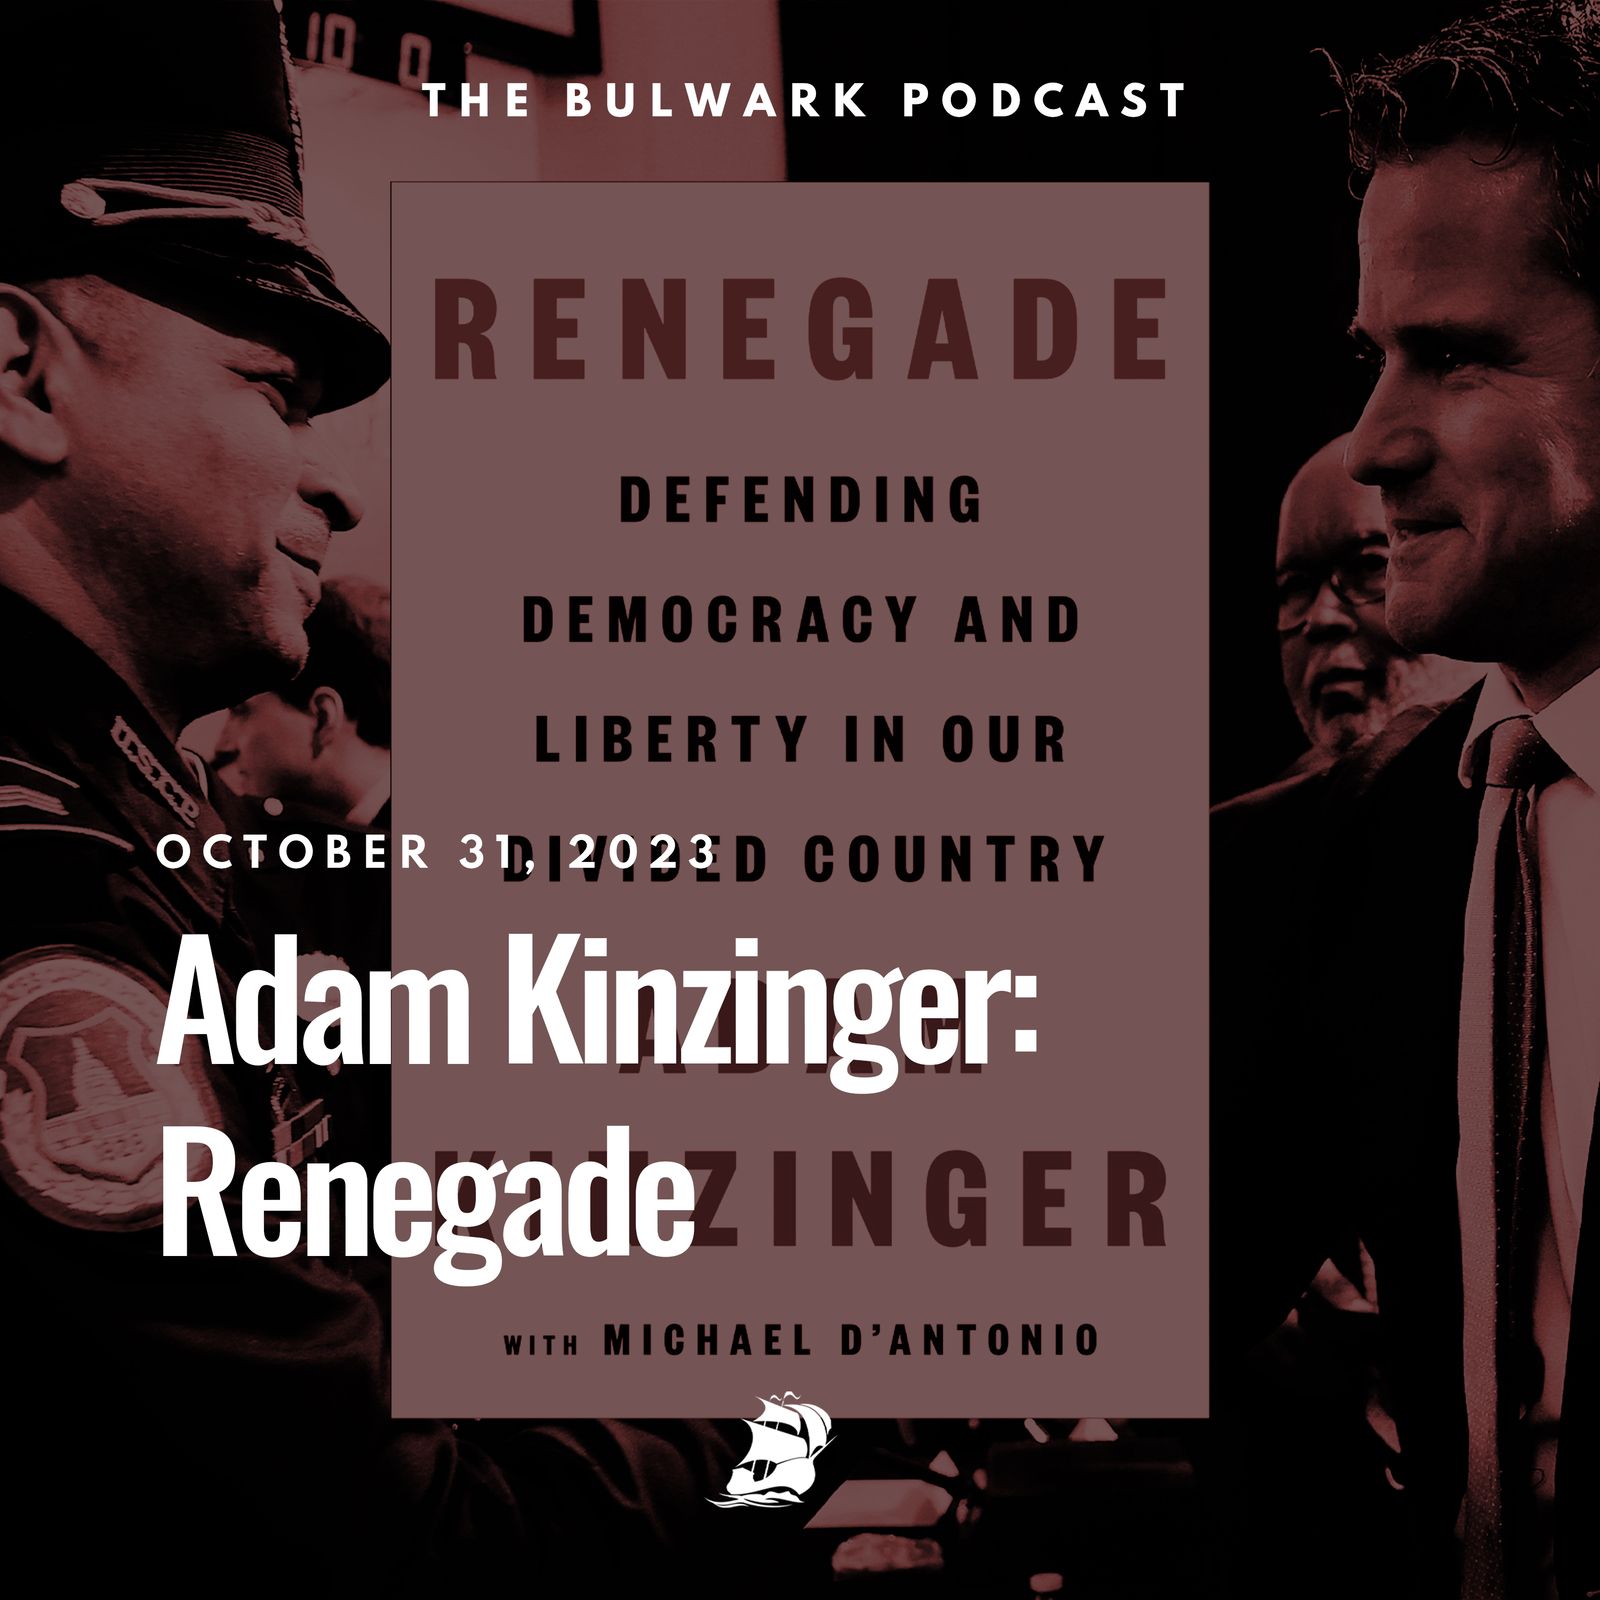 Adam Kinzinger: Renegade by The Bulwark Podcast